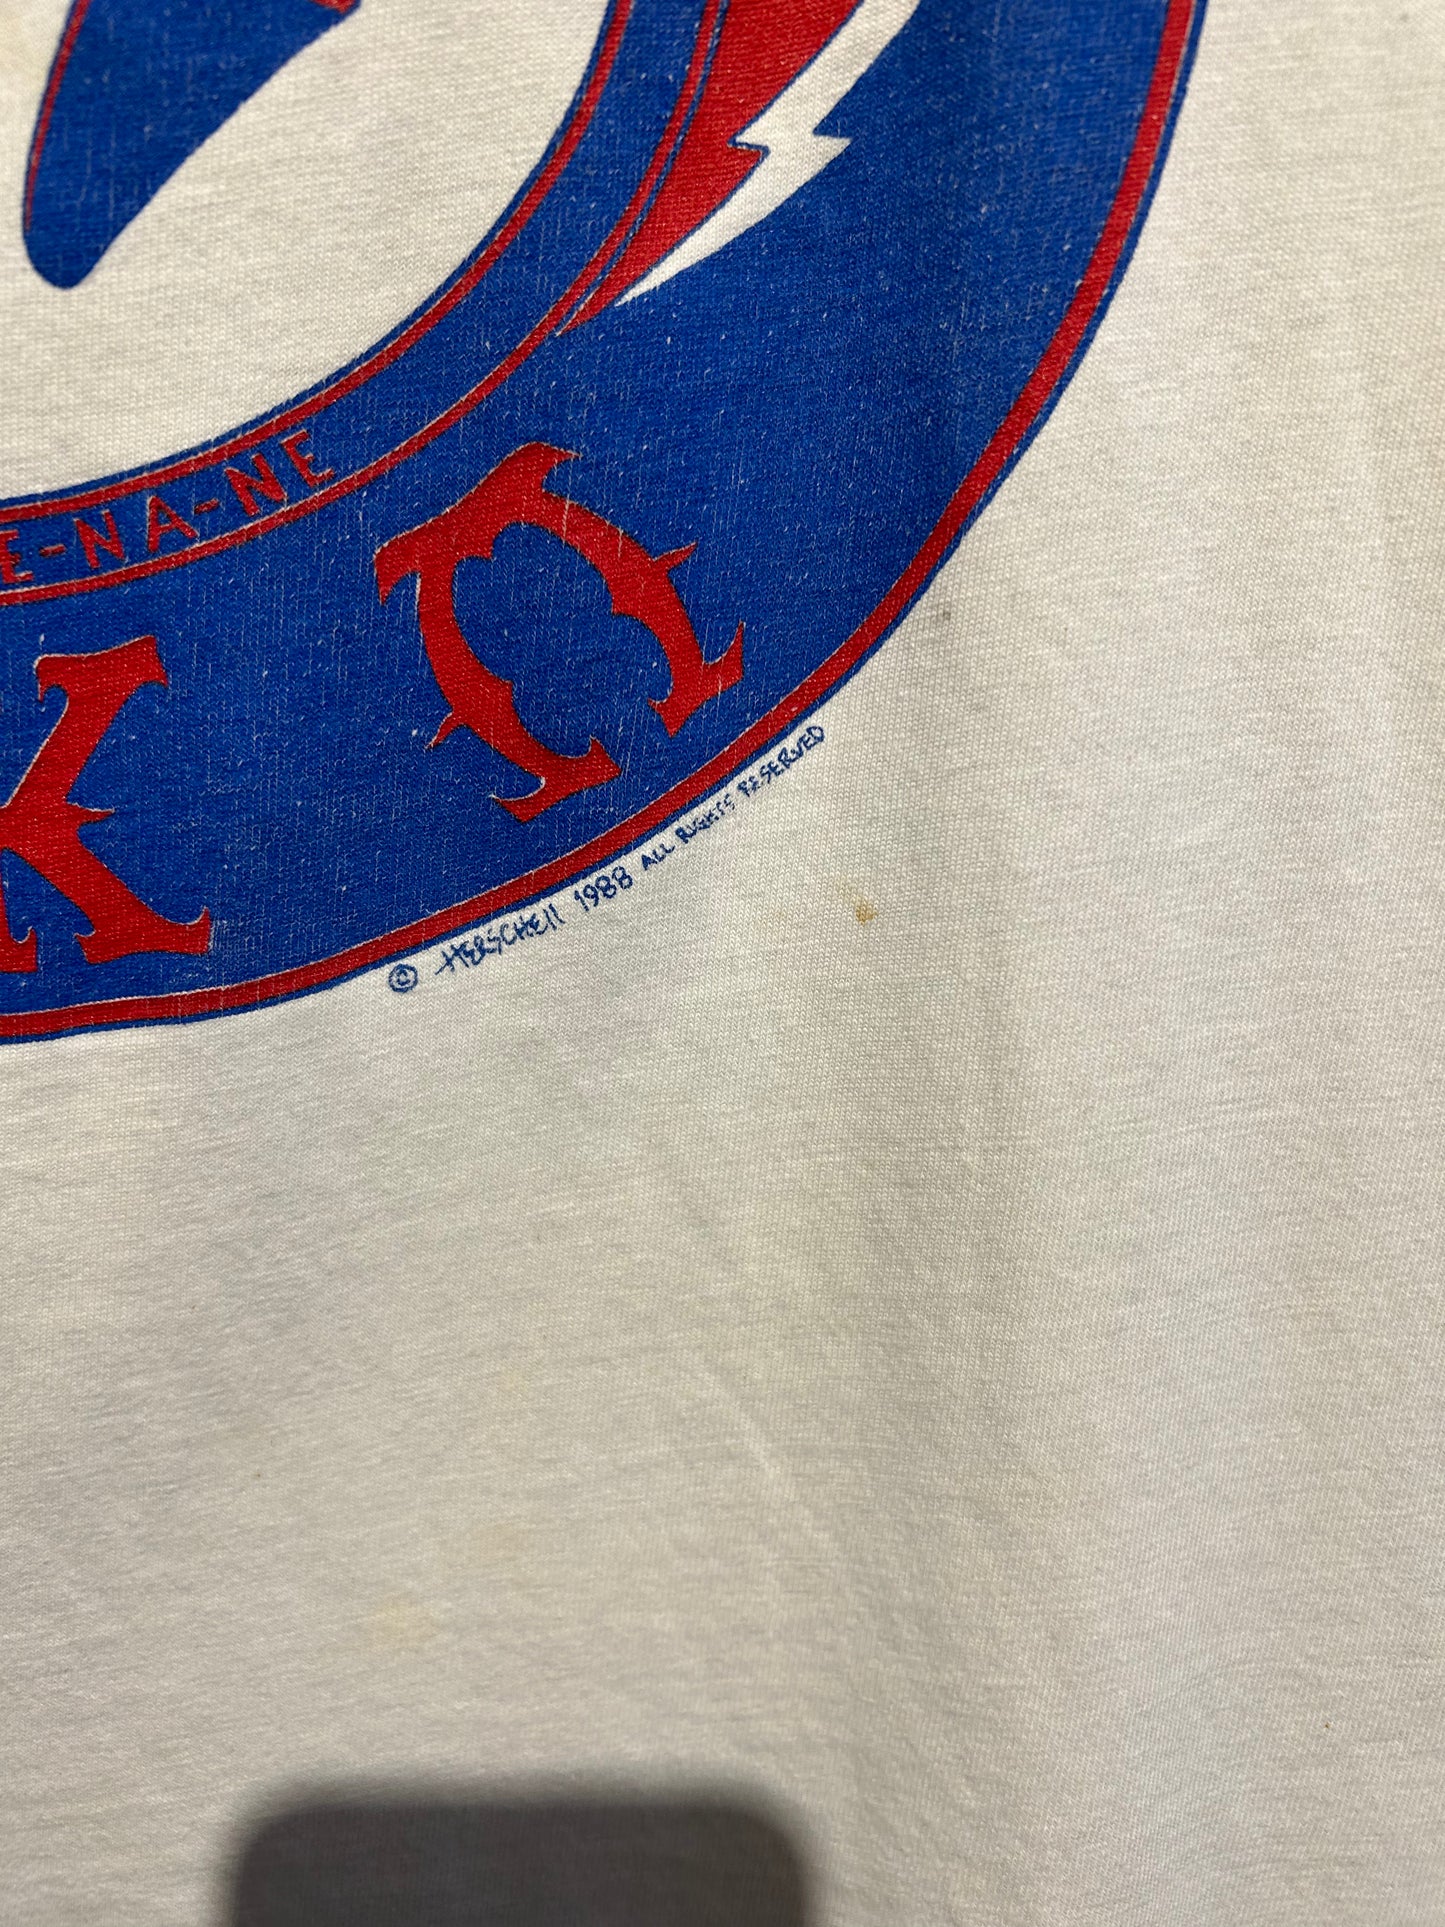 1988 Grateful Dead Iko Iko T-Shirt. Size M/L